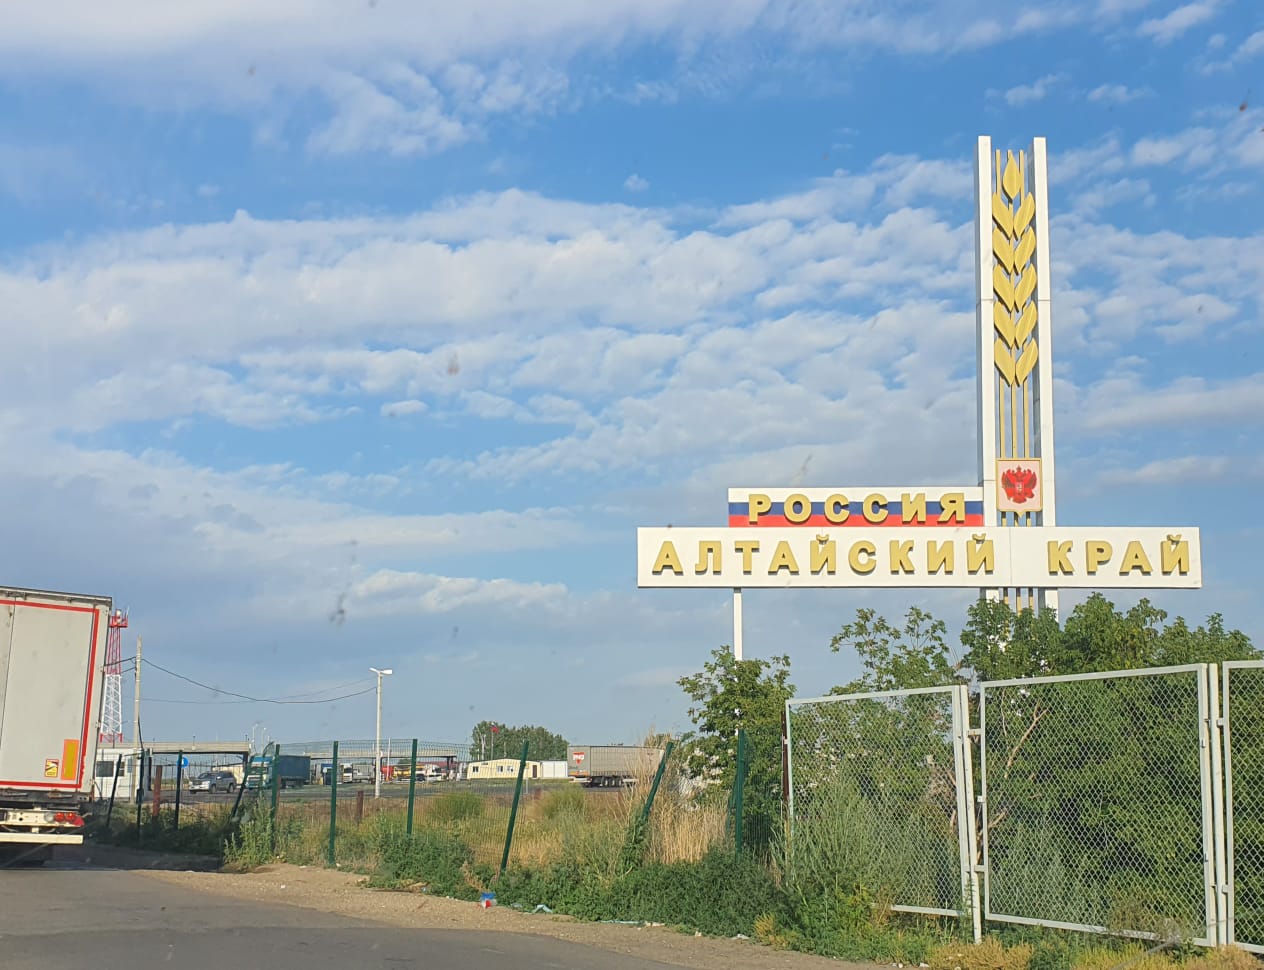 Веселоярск граница с Казахстаном. Петухово граница с Казахстаном. Курганская область граница с Казахстаном. Данное время в казахстане